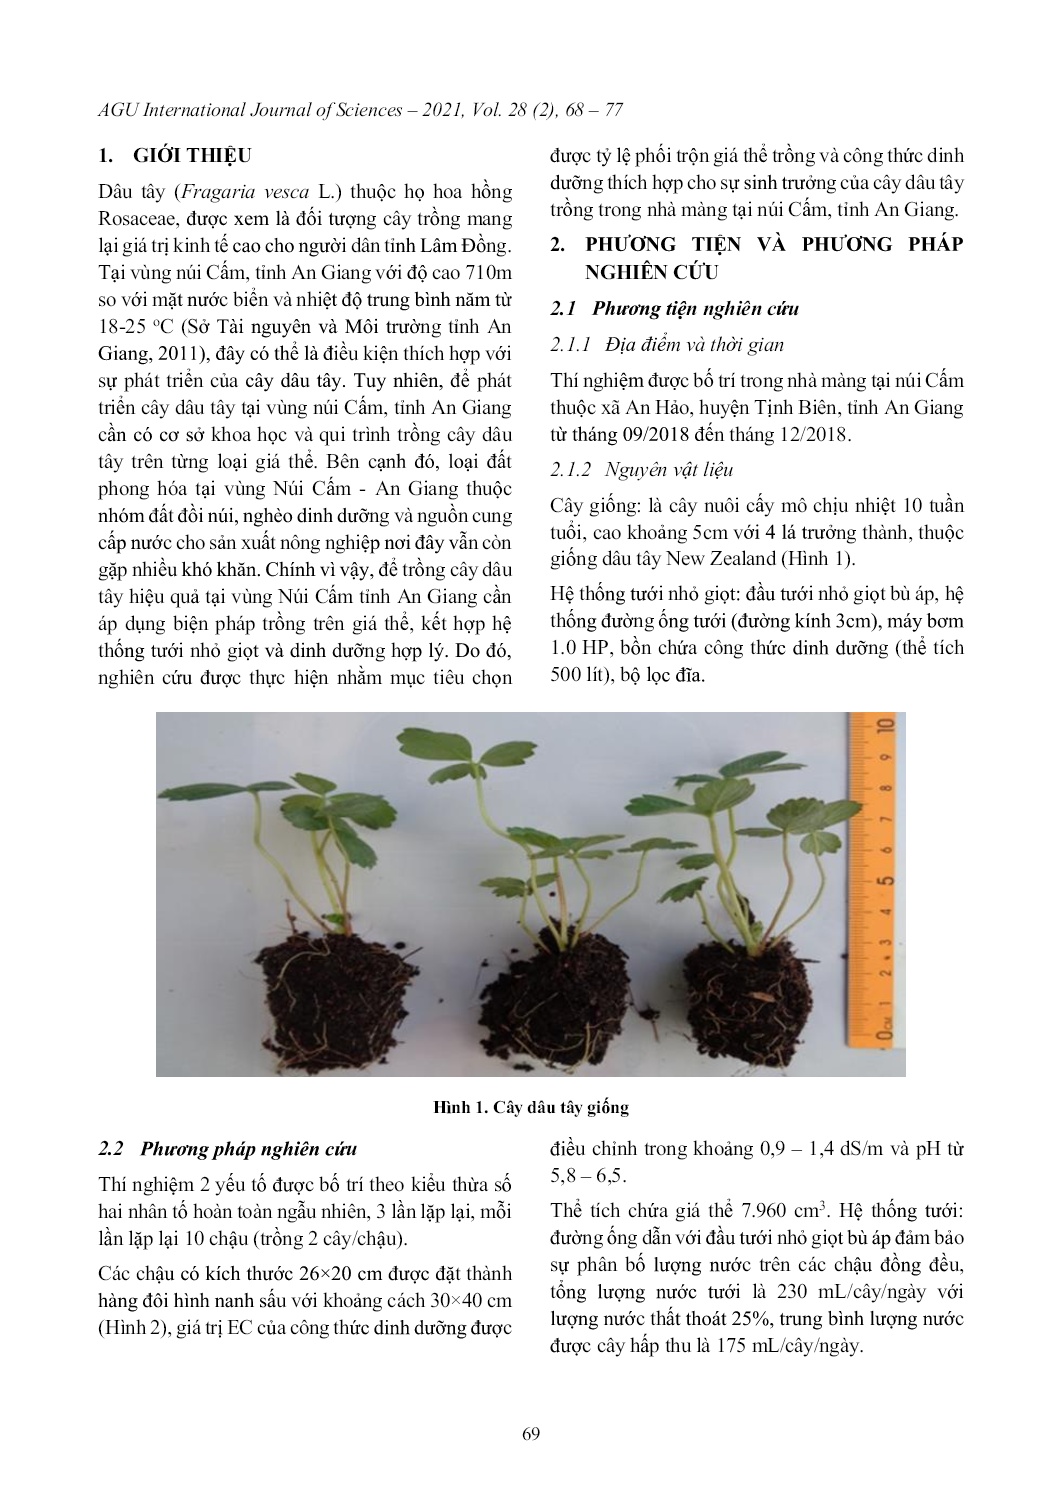 Ảnh hưởng của giá thể và công thức dinh dưỡng đến sinh trưởng của cây Dâu Tây (Fragaria vesca L.) trồng trong nhà màng tại vùng núi cấm, An Giang trang 2